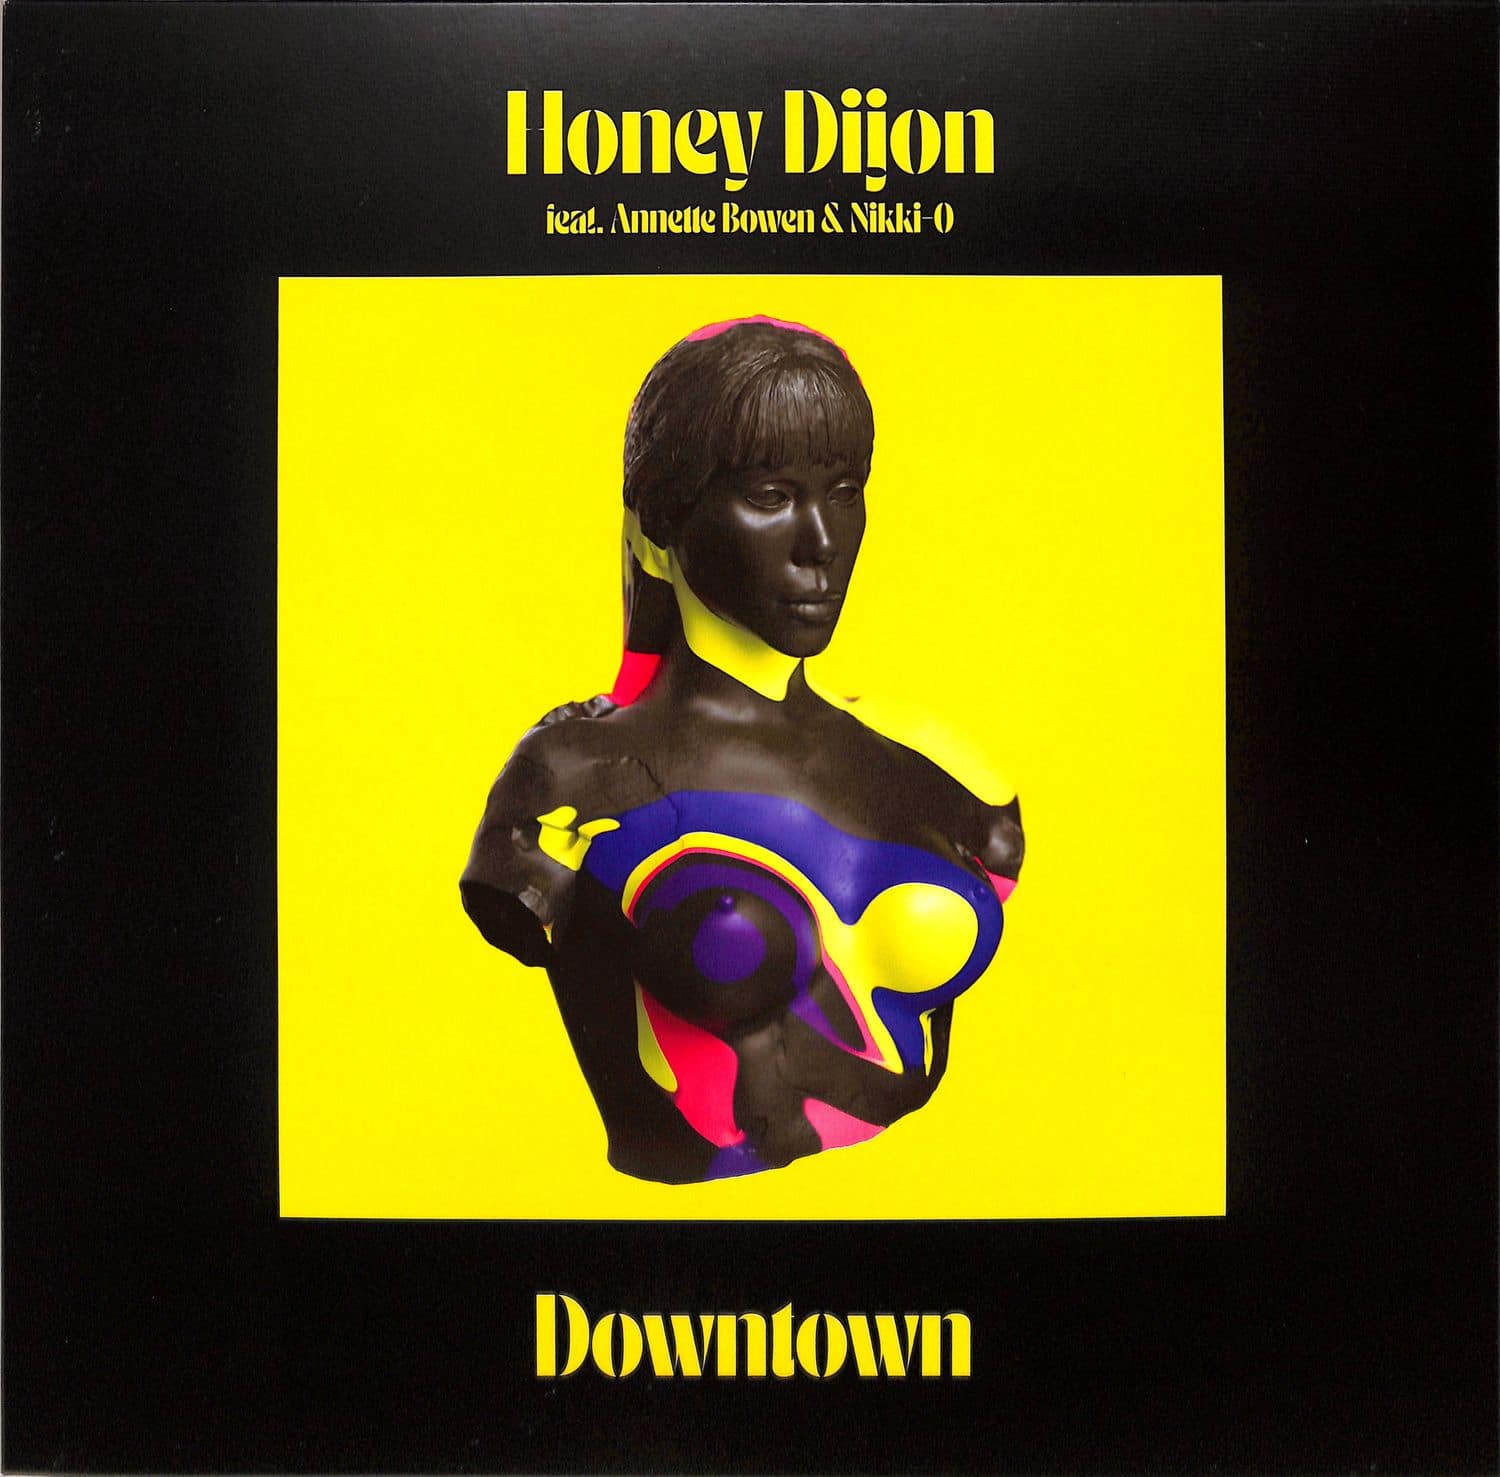 Honey Dijon featuring Annette Bowen & Nikki-O - DOWNTOWN 